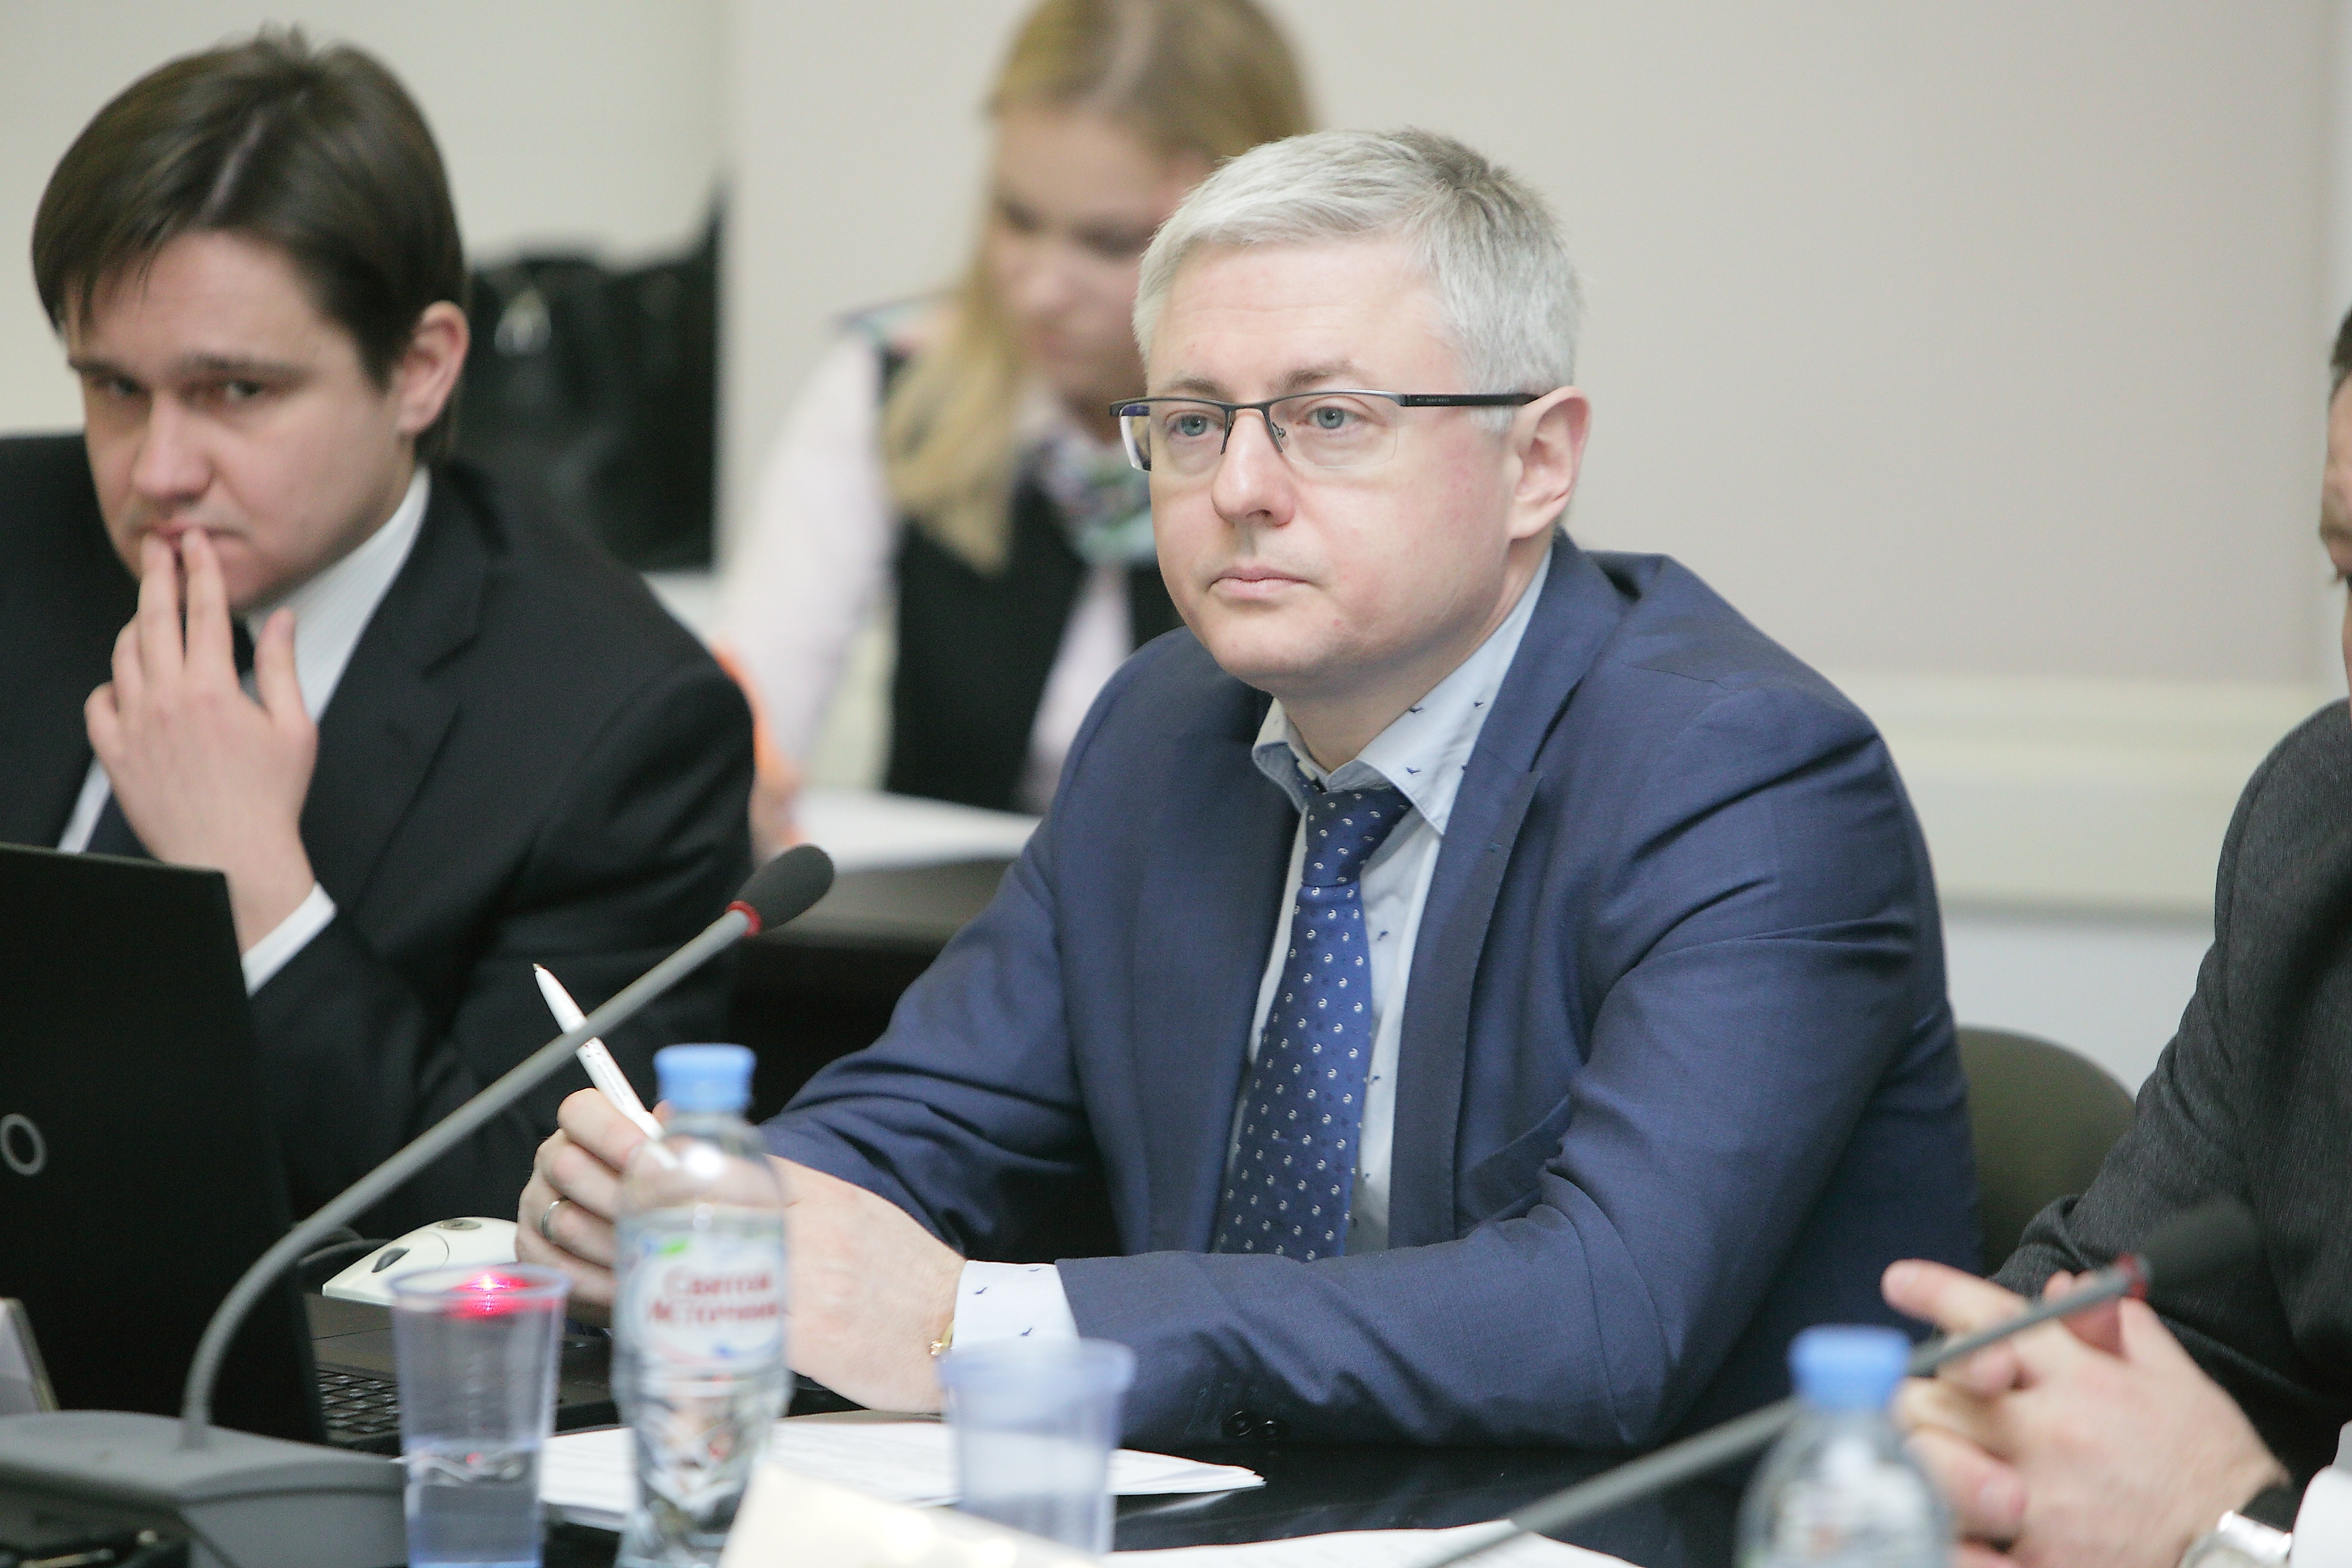 В ТПП состоялось заседание Россйско-Азербайджанского делового совета